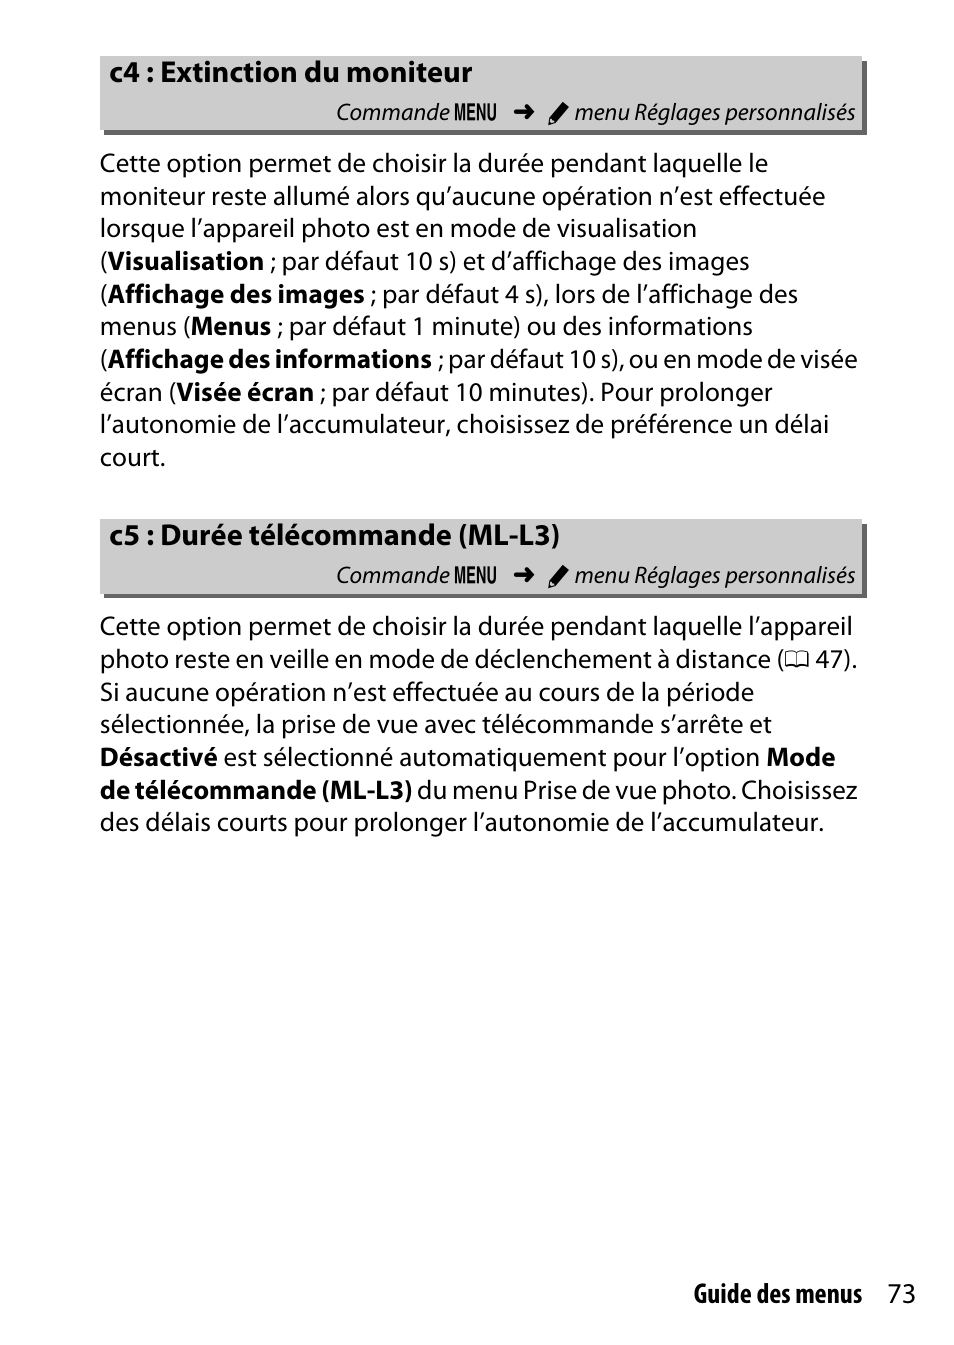 C4 : extinction du moniteur, C5 : durée télécommande (ml-l3) | Nikon D7200 body Manuel d'utilisation | Page 73 / 202